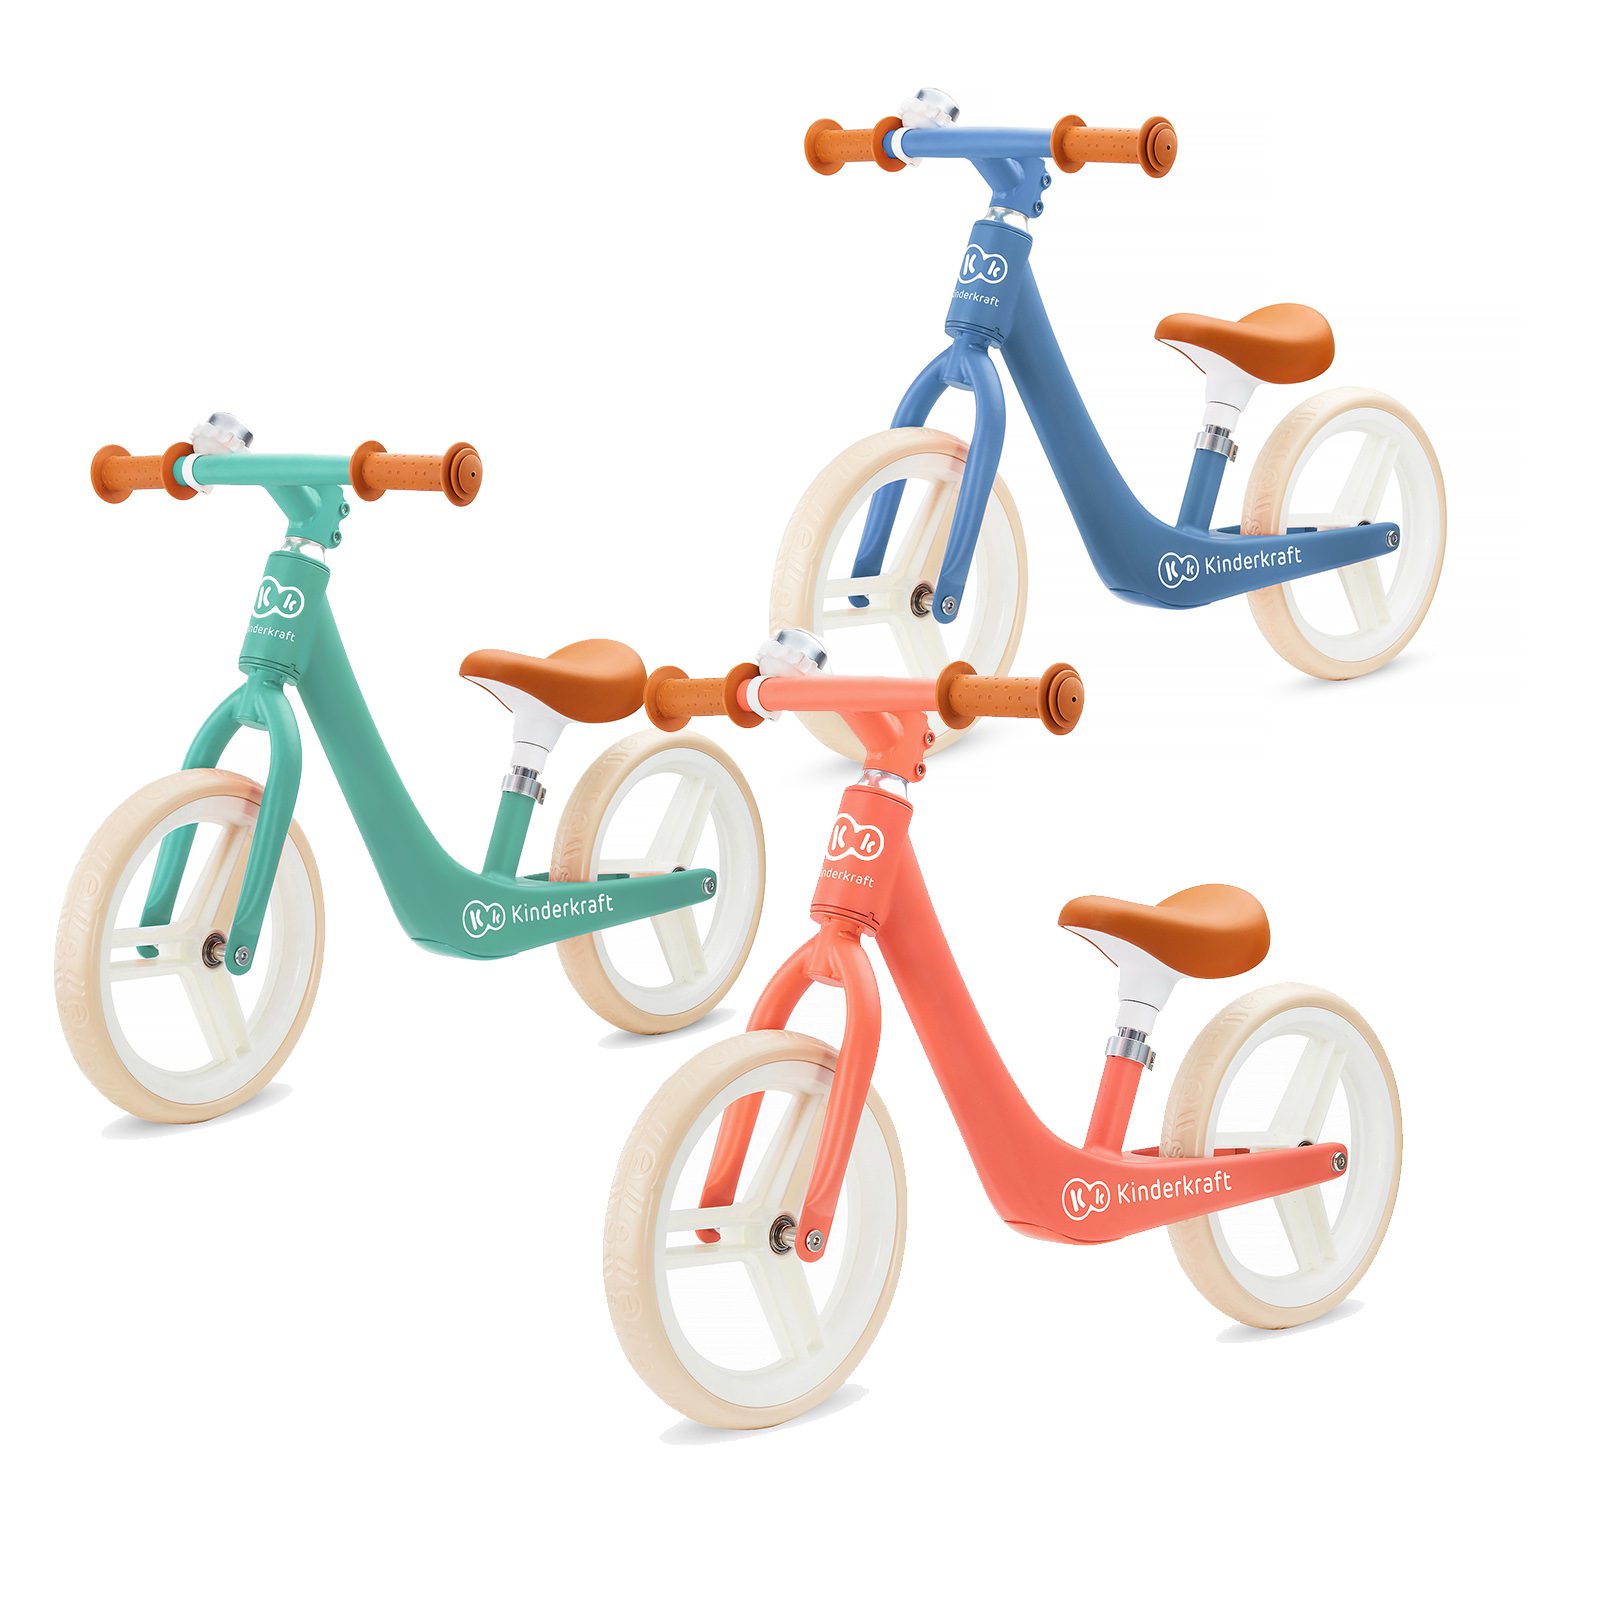 Veloce, leggero e maneggevole – sono le principali caratteristiche della bici senza pedali FLY PLUS